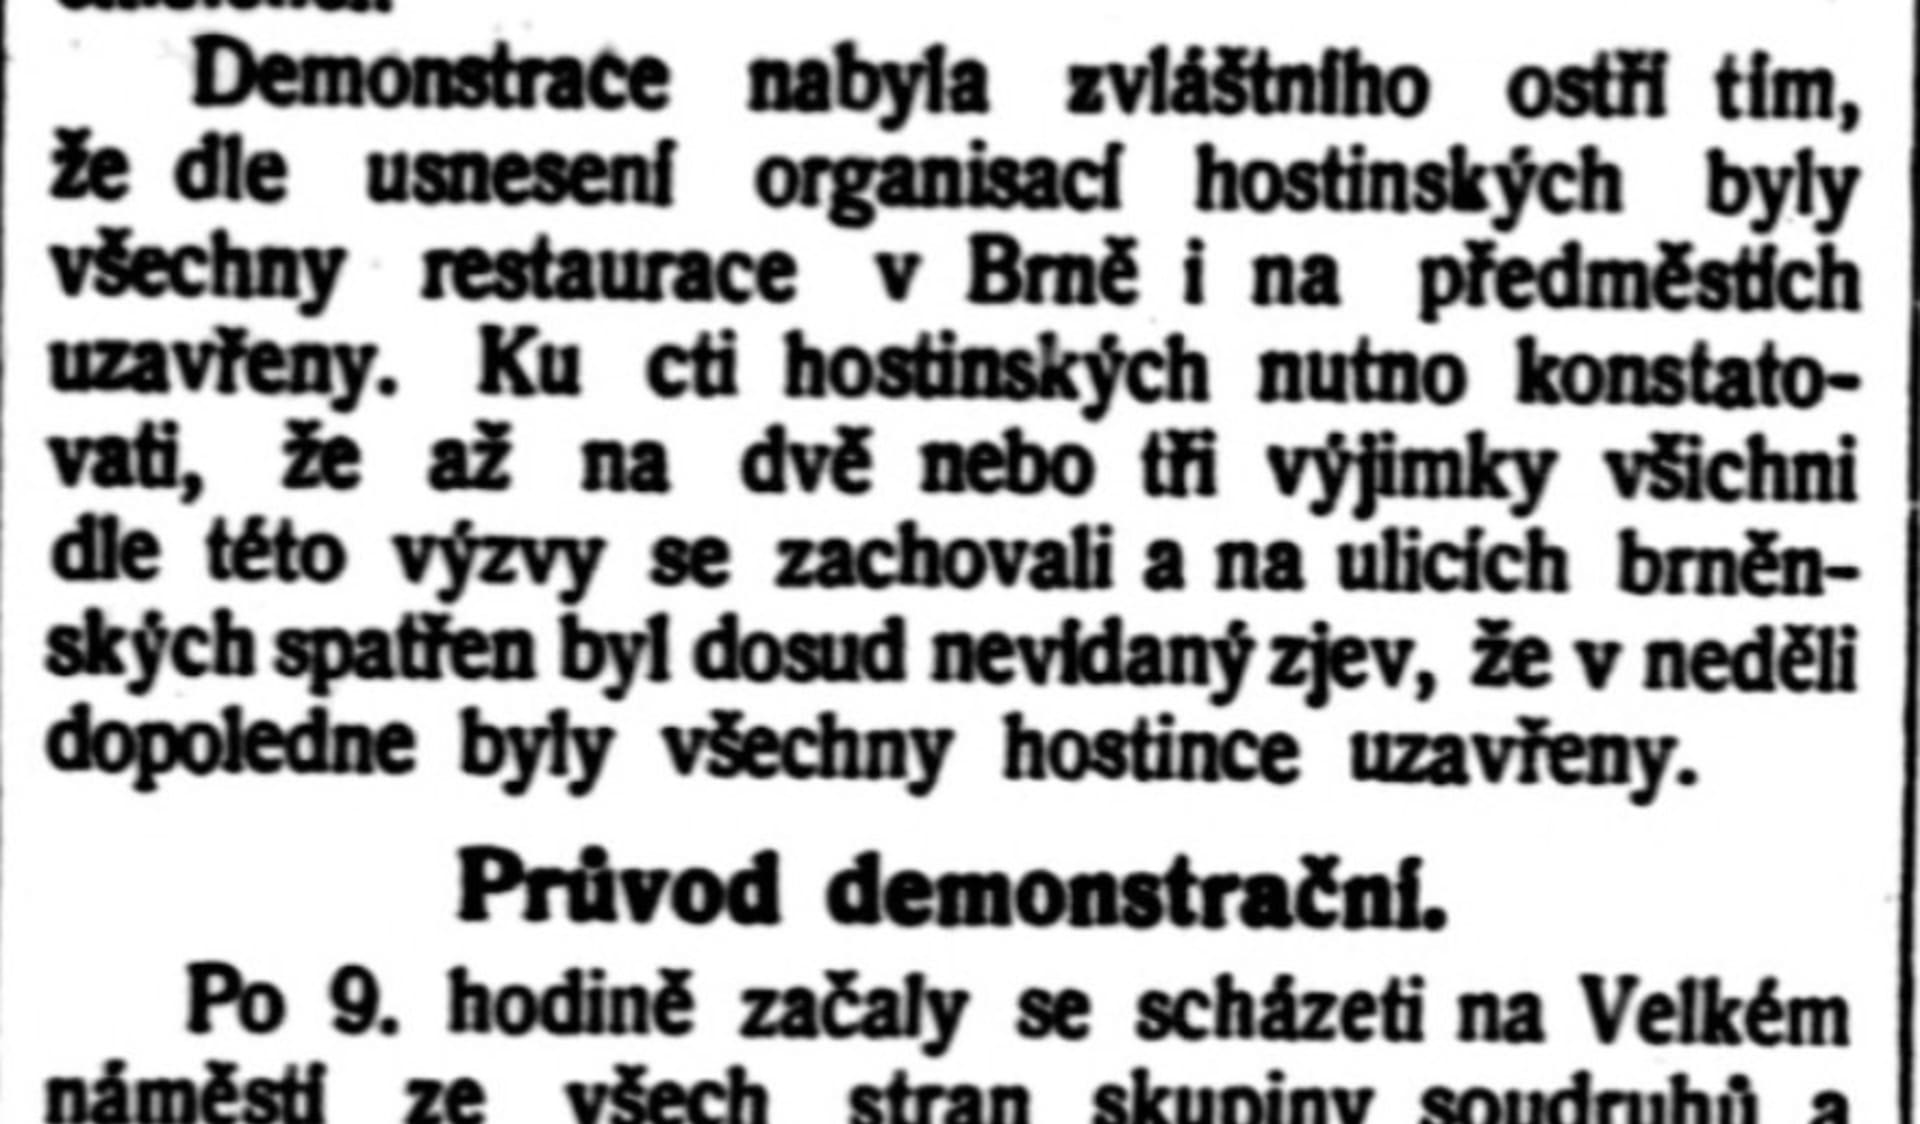 Popis brněnské demonstrace proti pivní dani v deníku Rovnost, 24. května 1909.